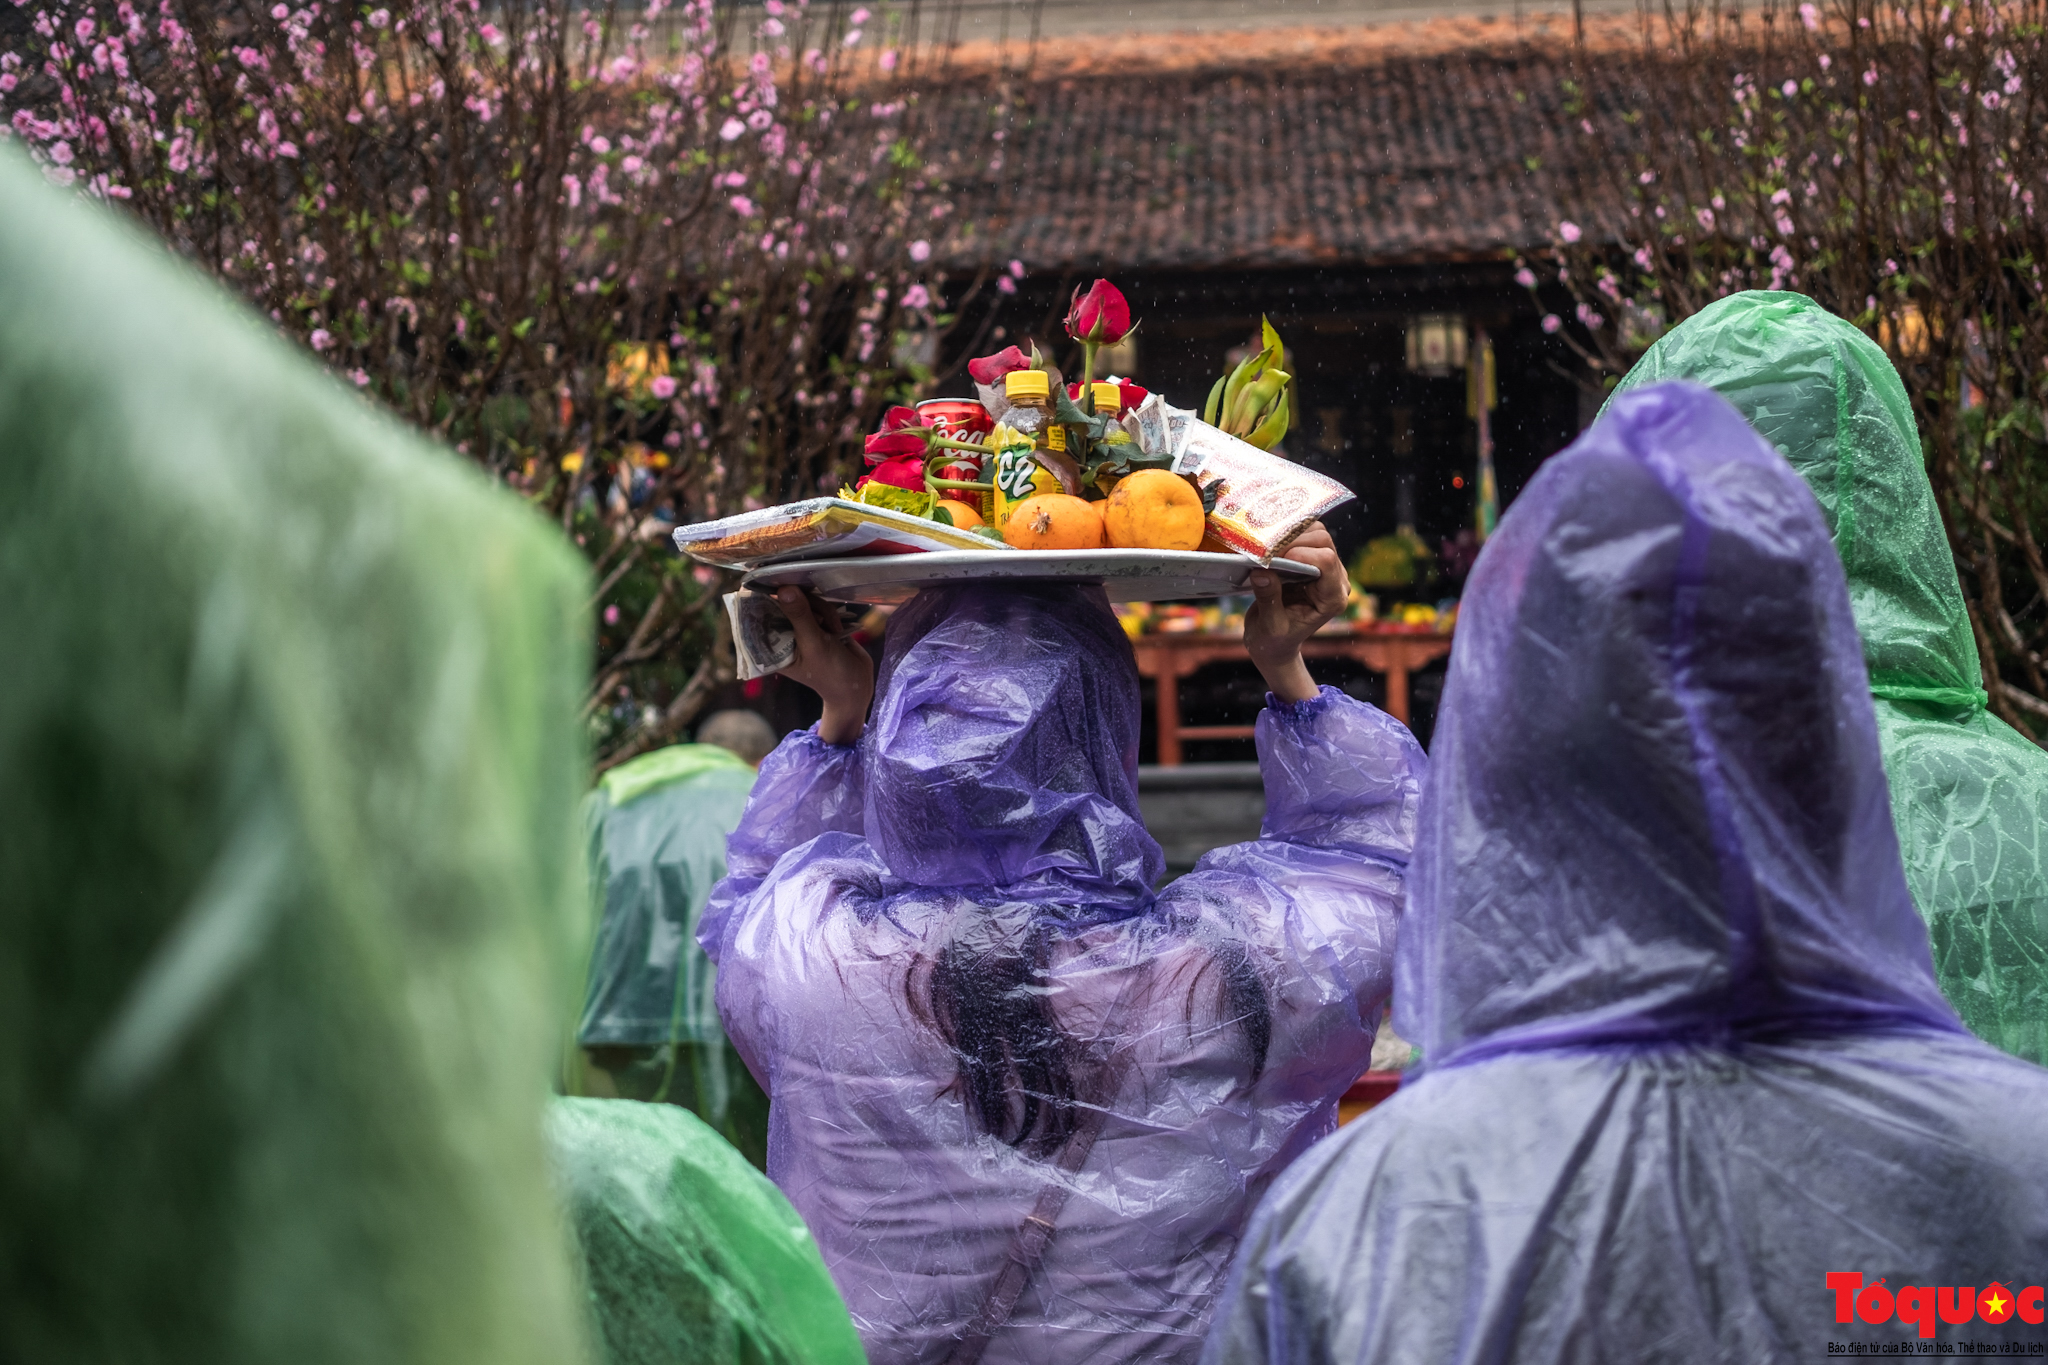 Du khách hành hương đội mưa về khai hội chùa Hương - Ảnh 12.